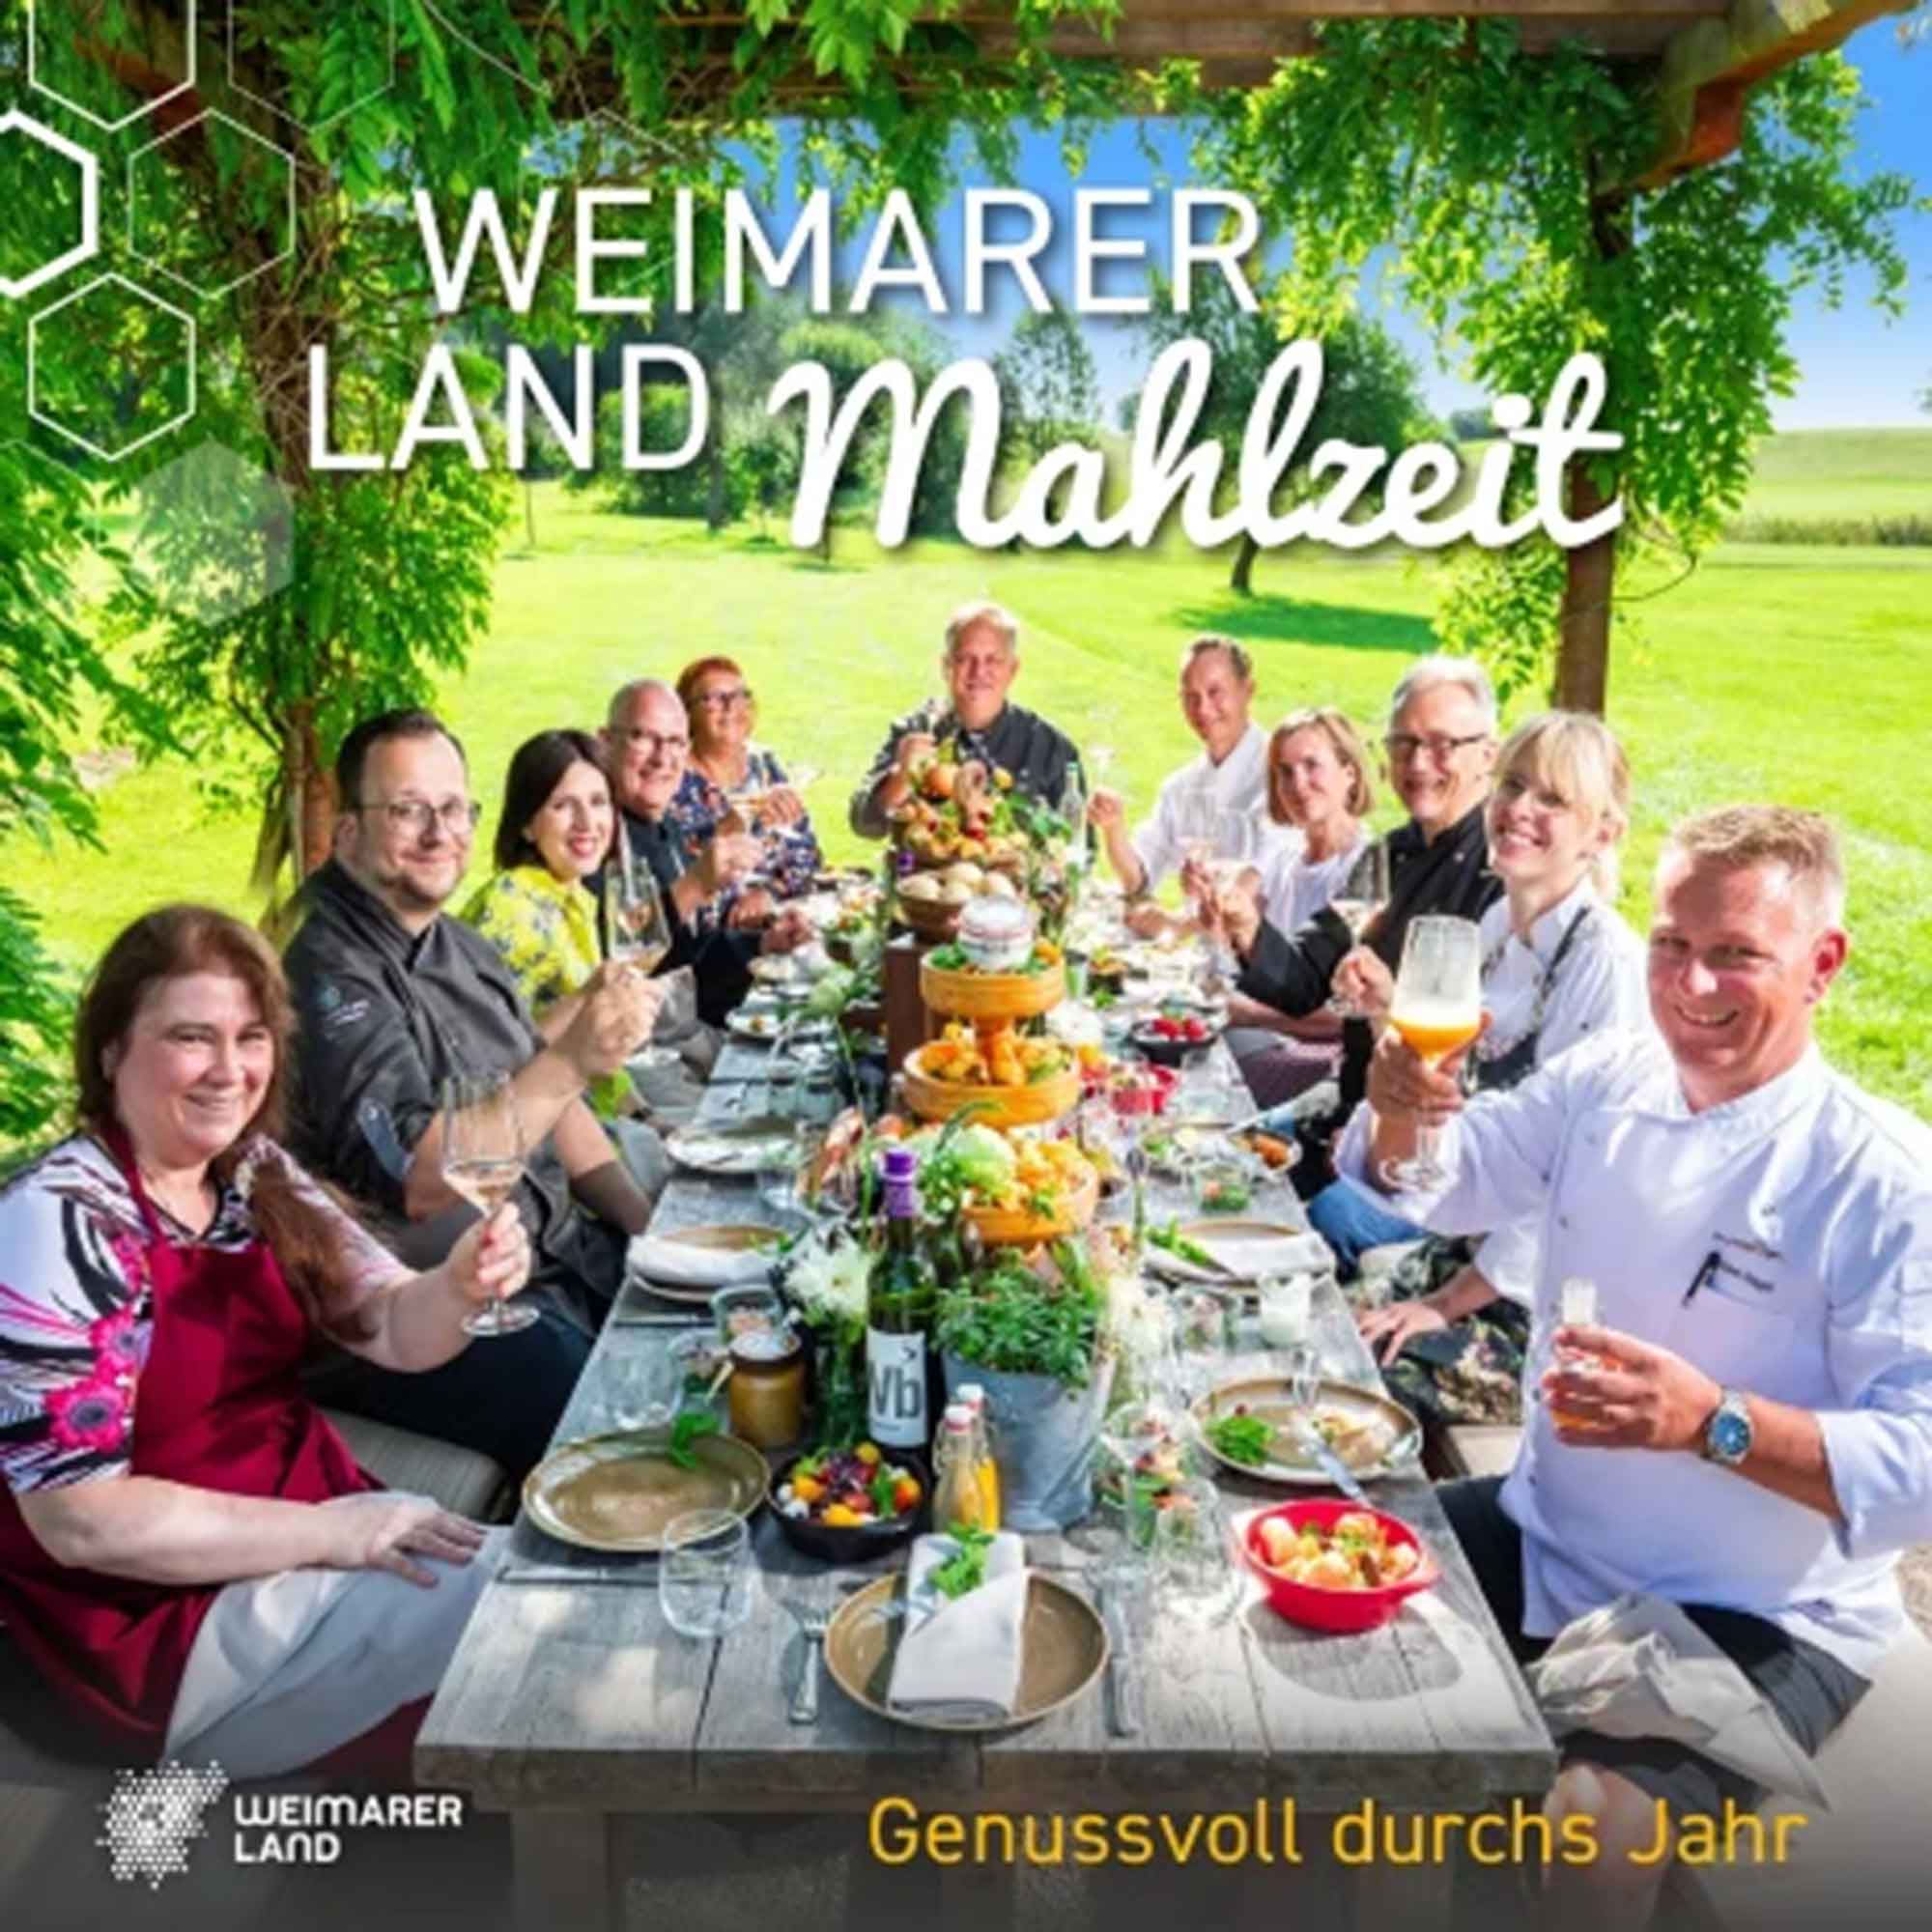 Weimarer Land Mahlzeit Vol. 2 – »Genussvoll durchs Jahr«